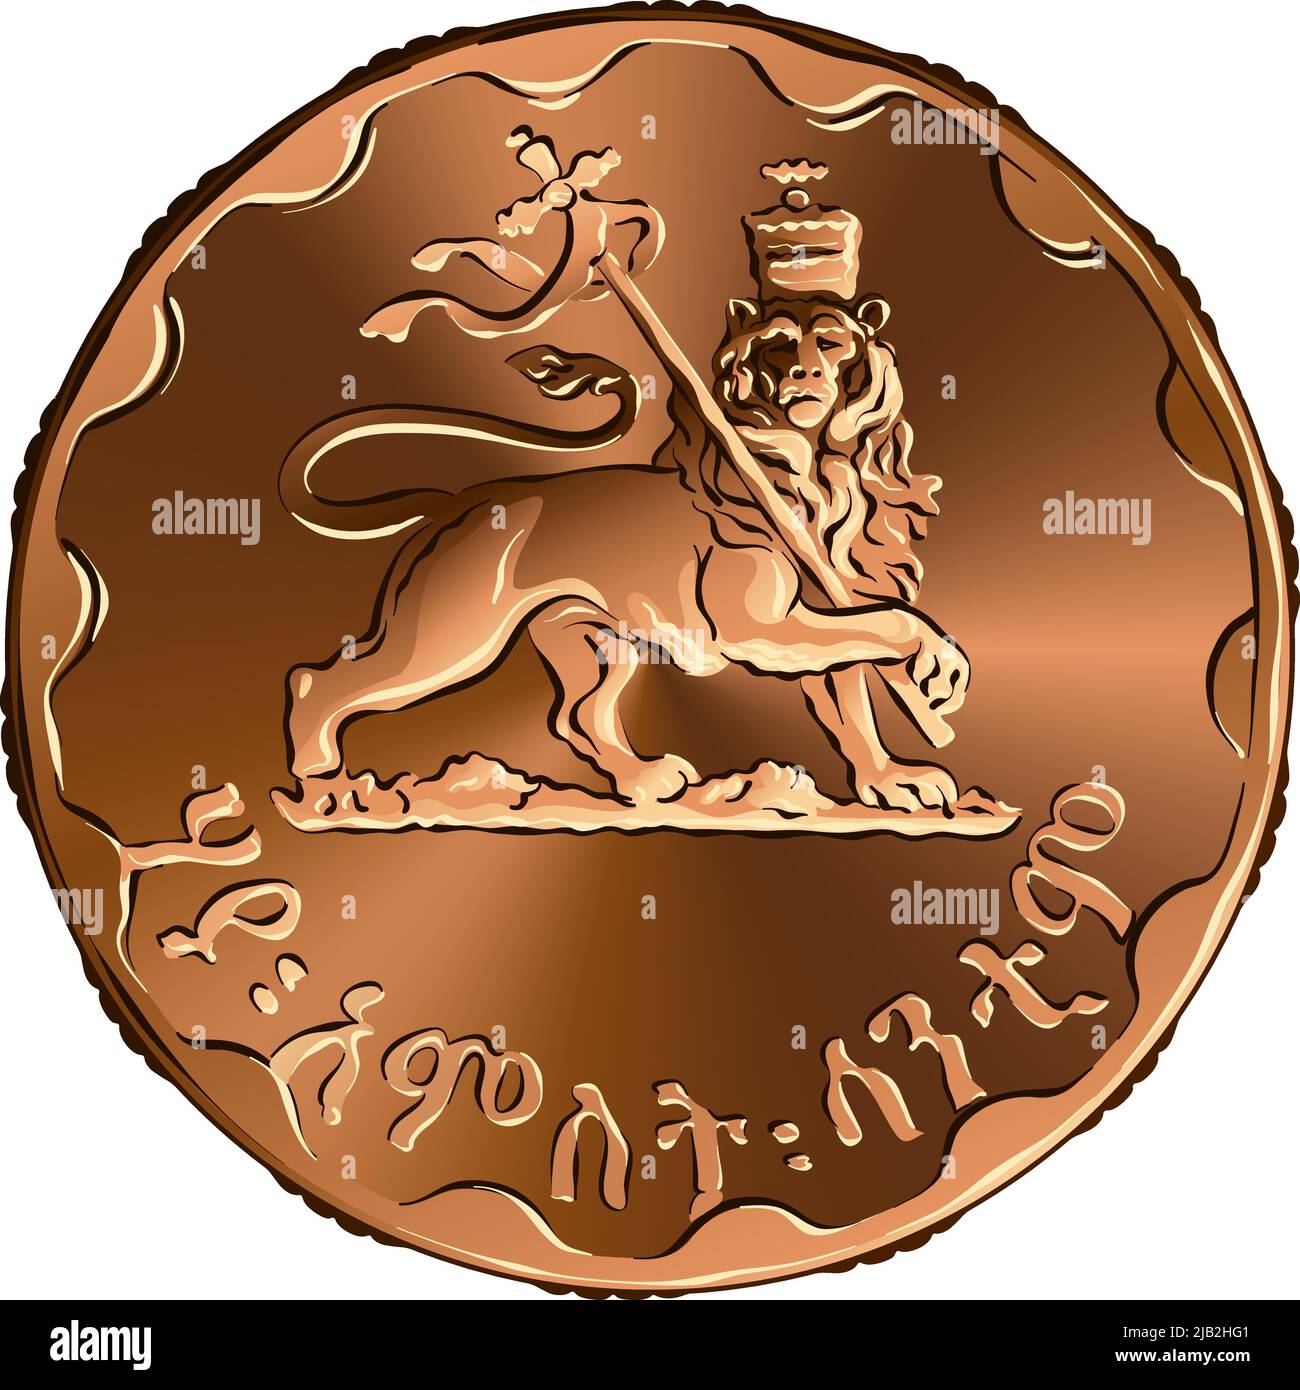 El dinero de Etiopía, birr etíope, la moneda de cobre 25 santeem, al revés con el león rampante coronado que sostiene cruz Ilustración del Vector